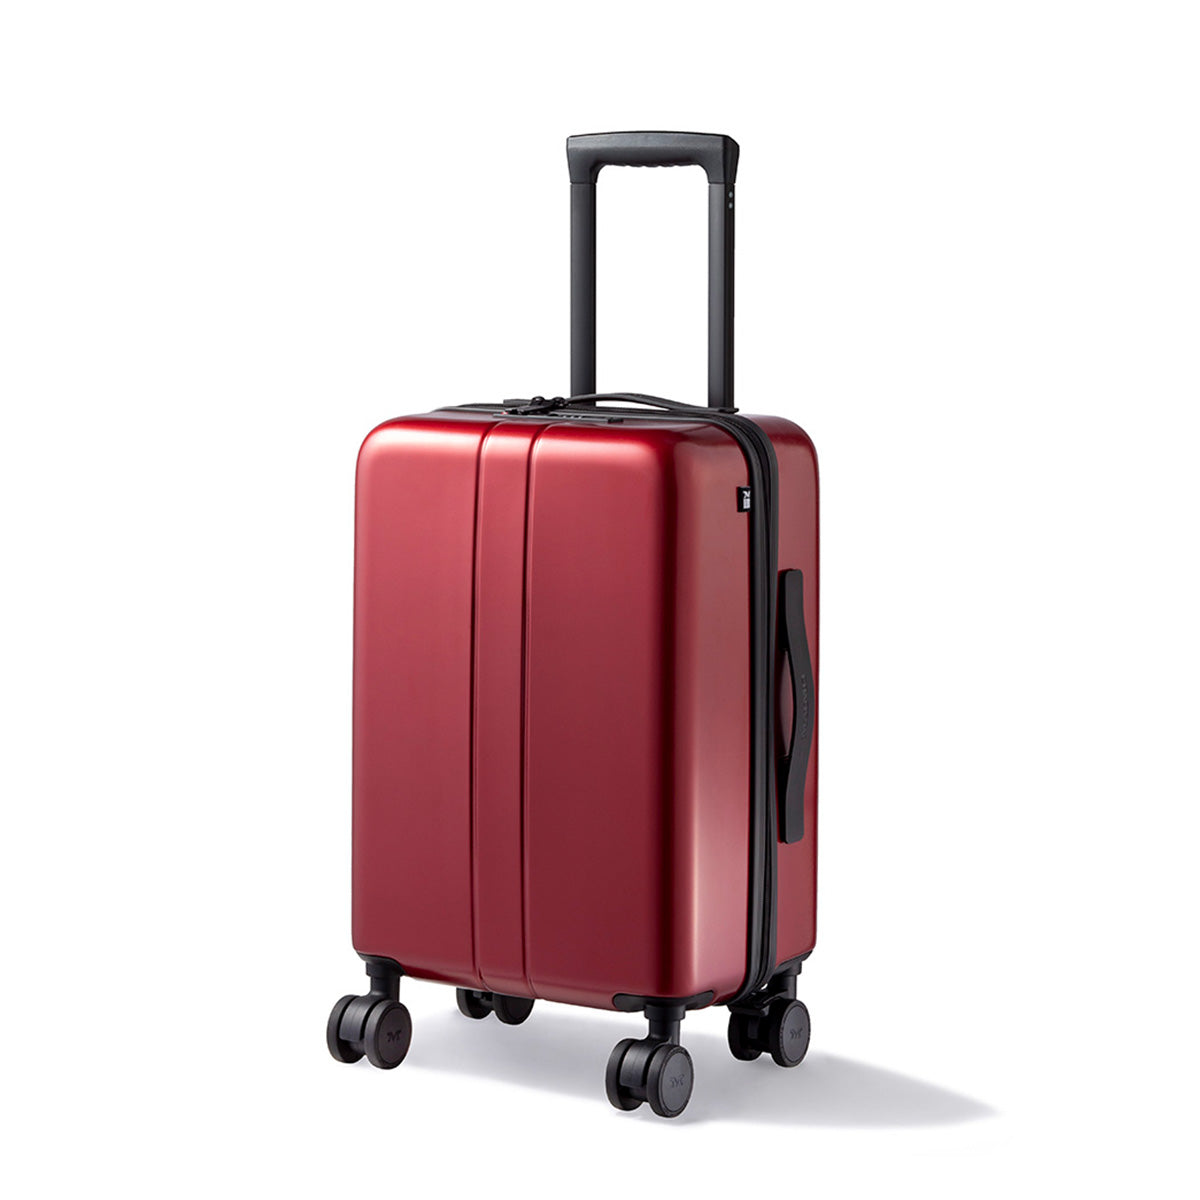 MAIMO スーツケース キャリーケース Mサイズ 62L レッド - 旅行かばん